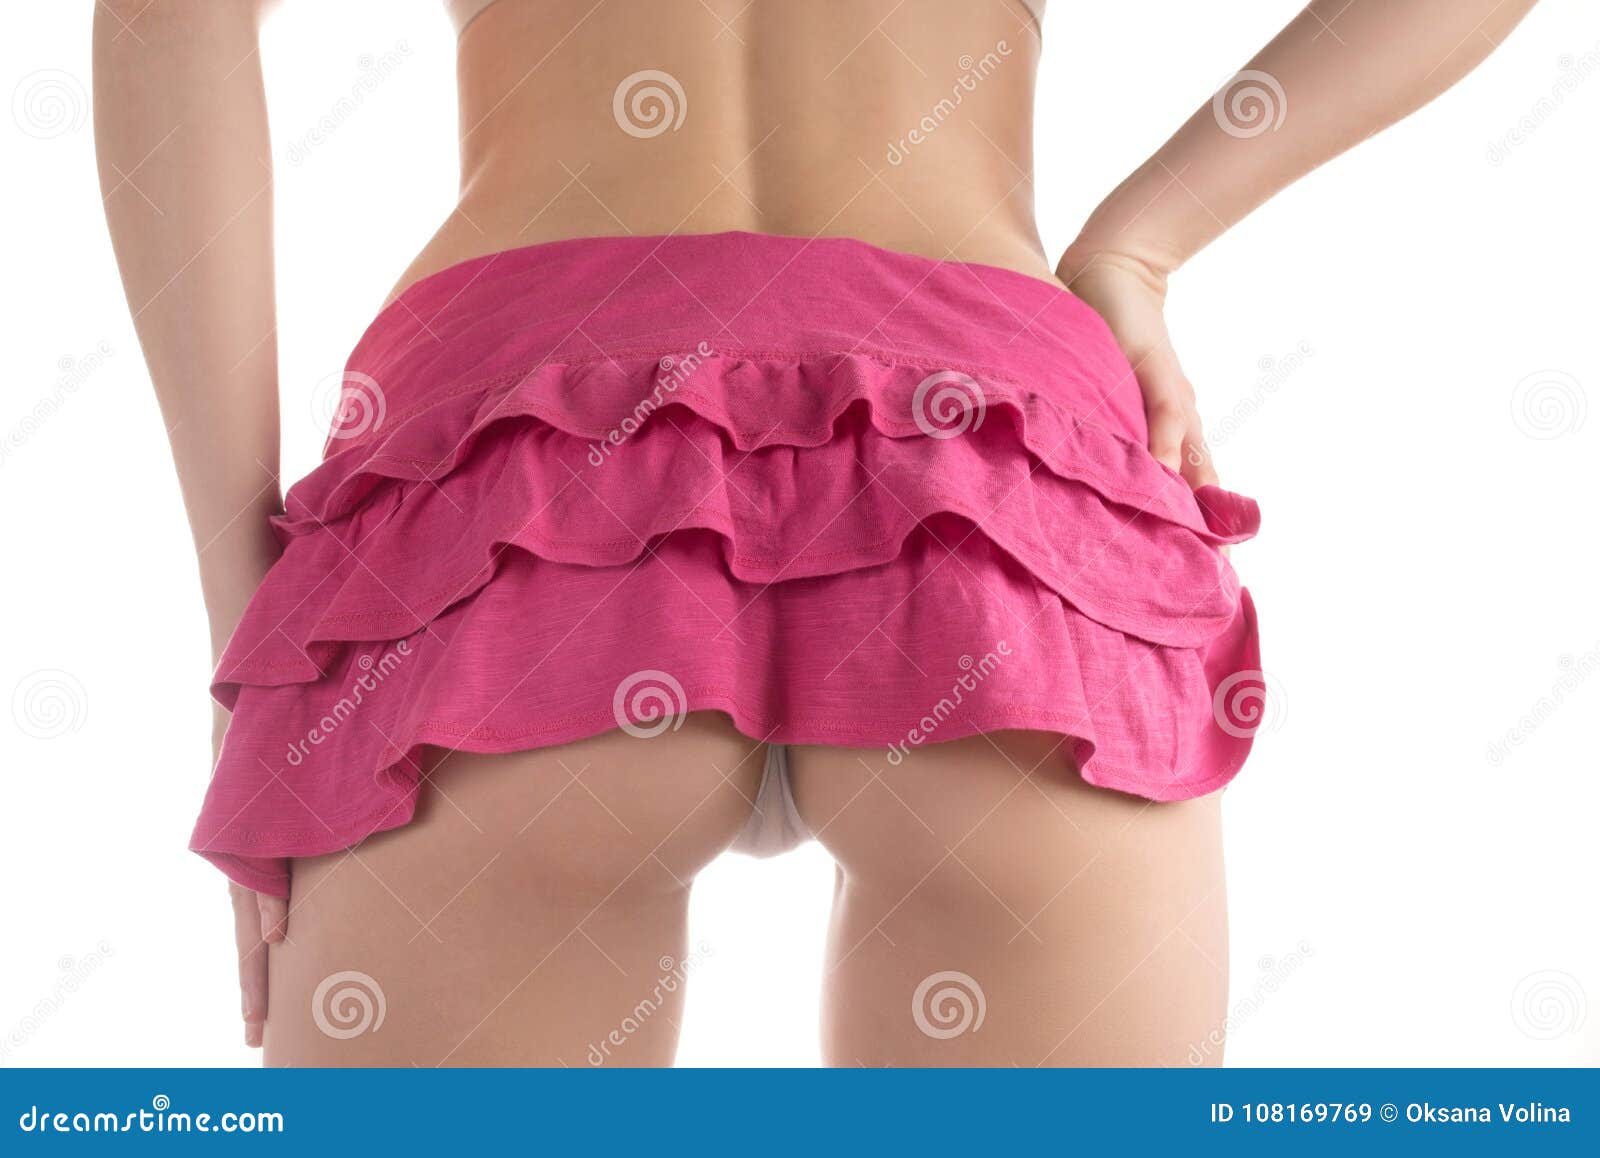 Short Skirt Ass Pics tequila porn